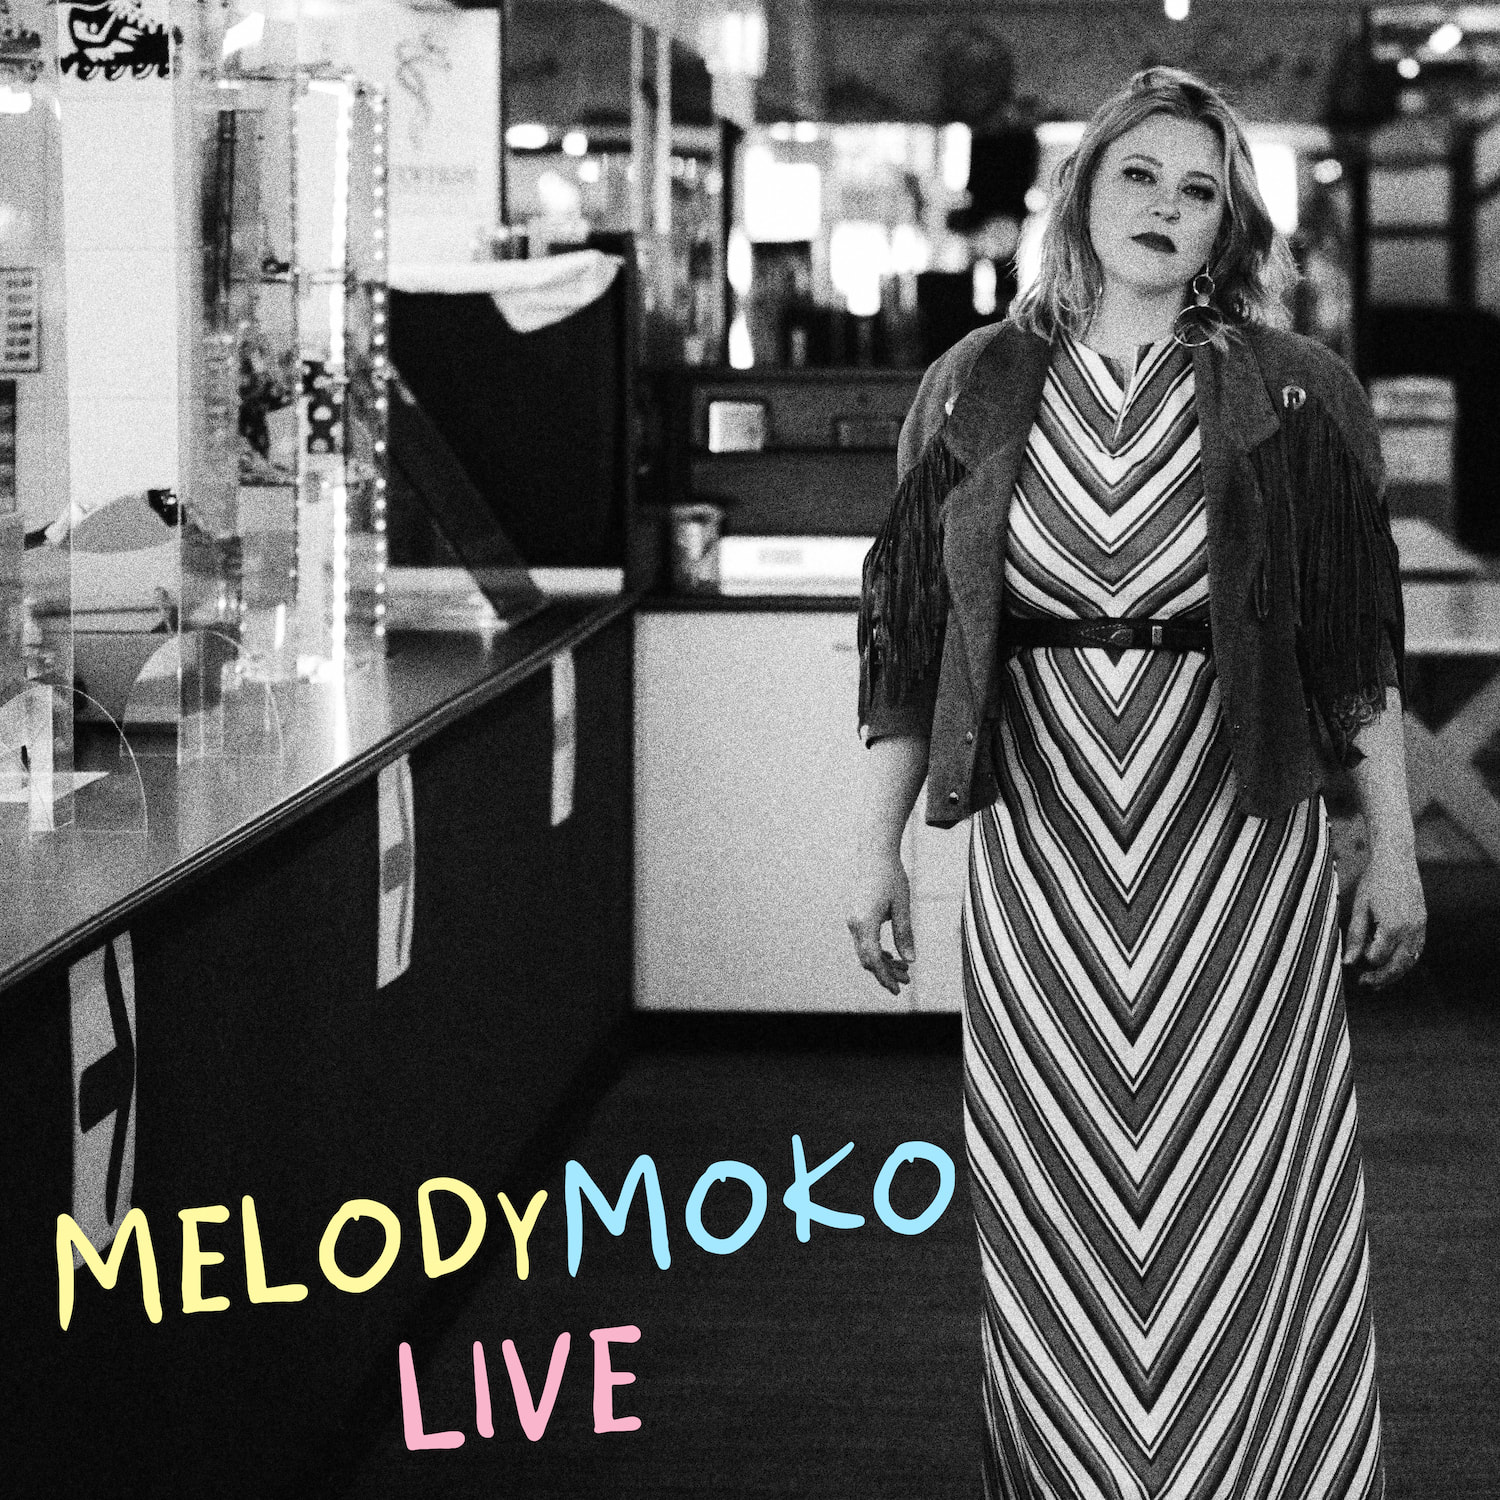 melody moko tour